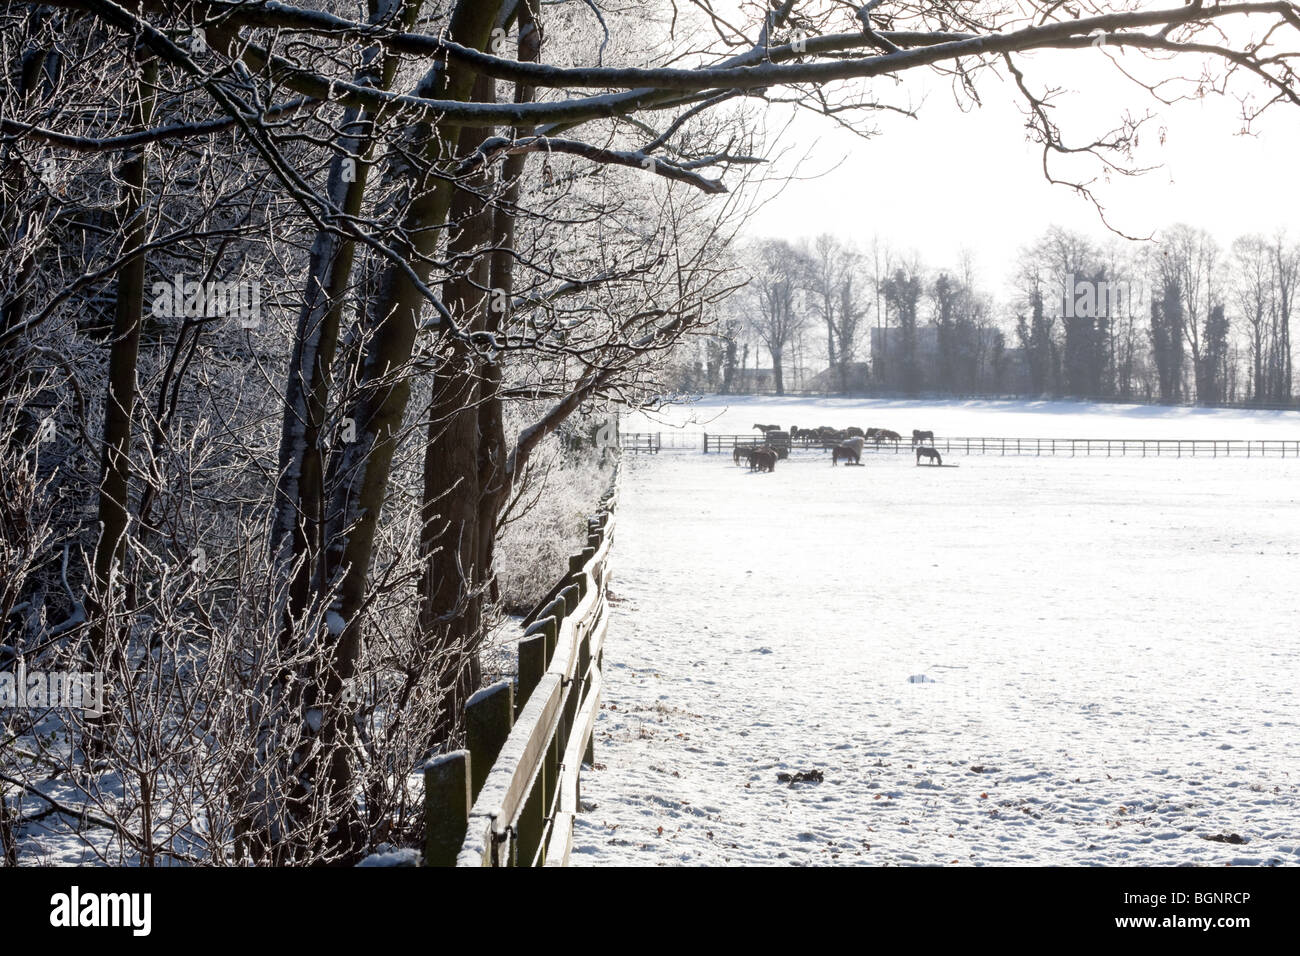 Pferde grasen auf den Schnee, Kentford, in der Nähe von Newmarket, Suffolk, UK Stockfoto